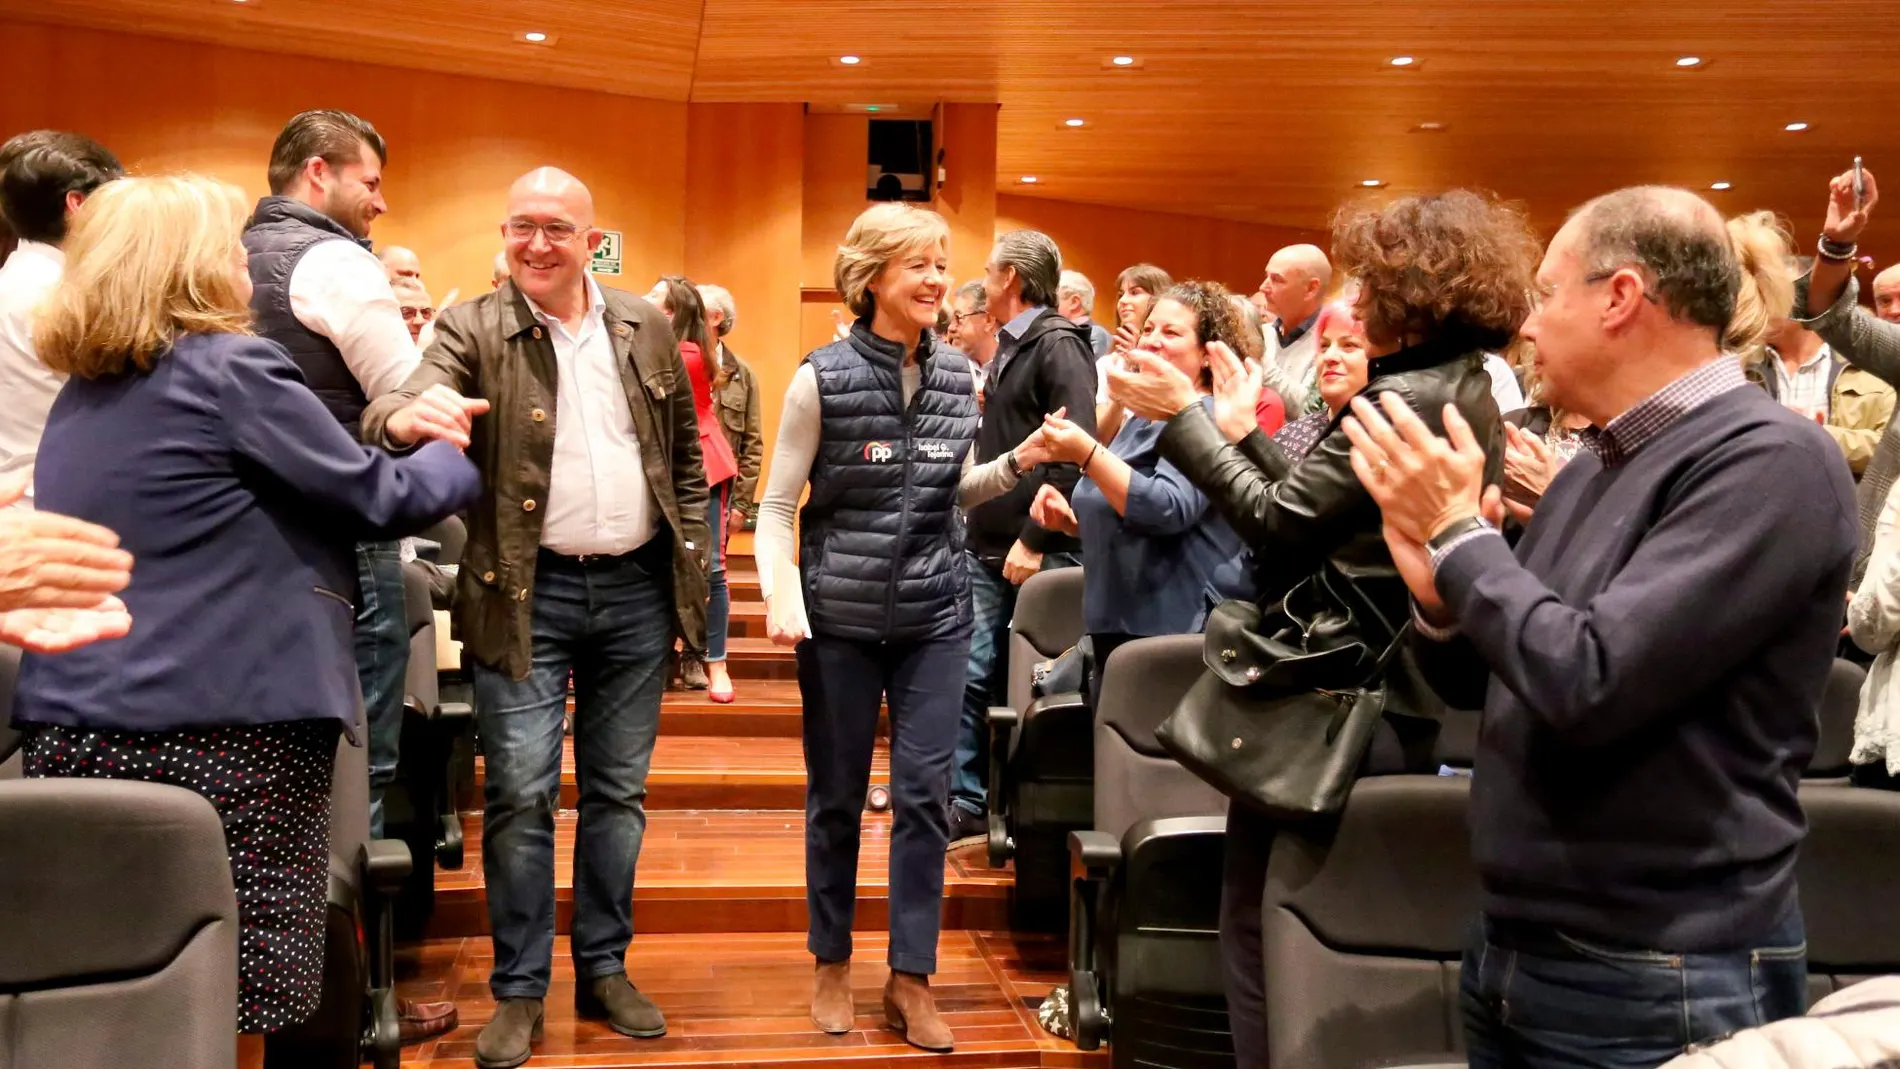 La candidata del PP por Valladolid, Isabel García Tejerina, y el presidente provincial, Jesús Julio Carnero, saludan a los alcaldes asistentes al acto